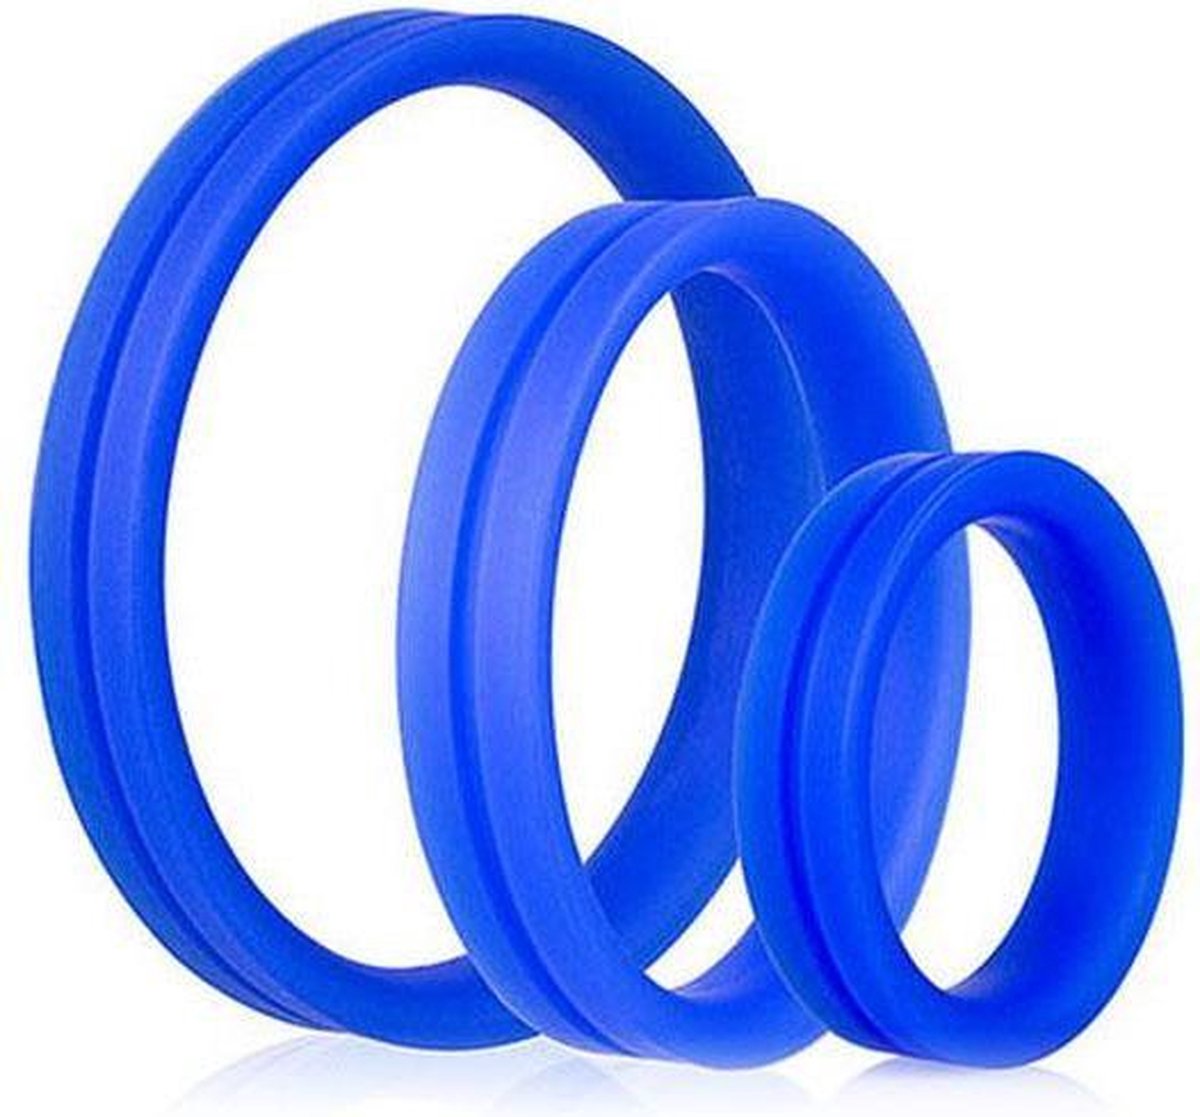 SCREAMING O | Screaming O Ring Pro Set 3 Rings Blue